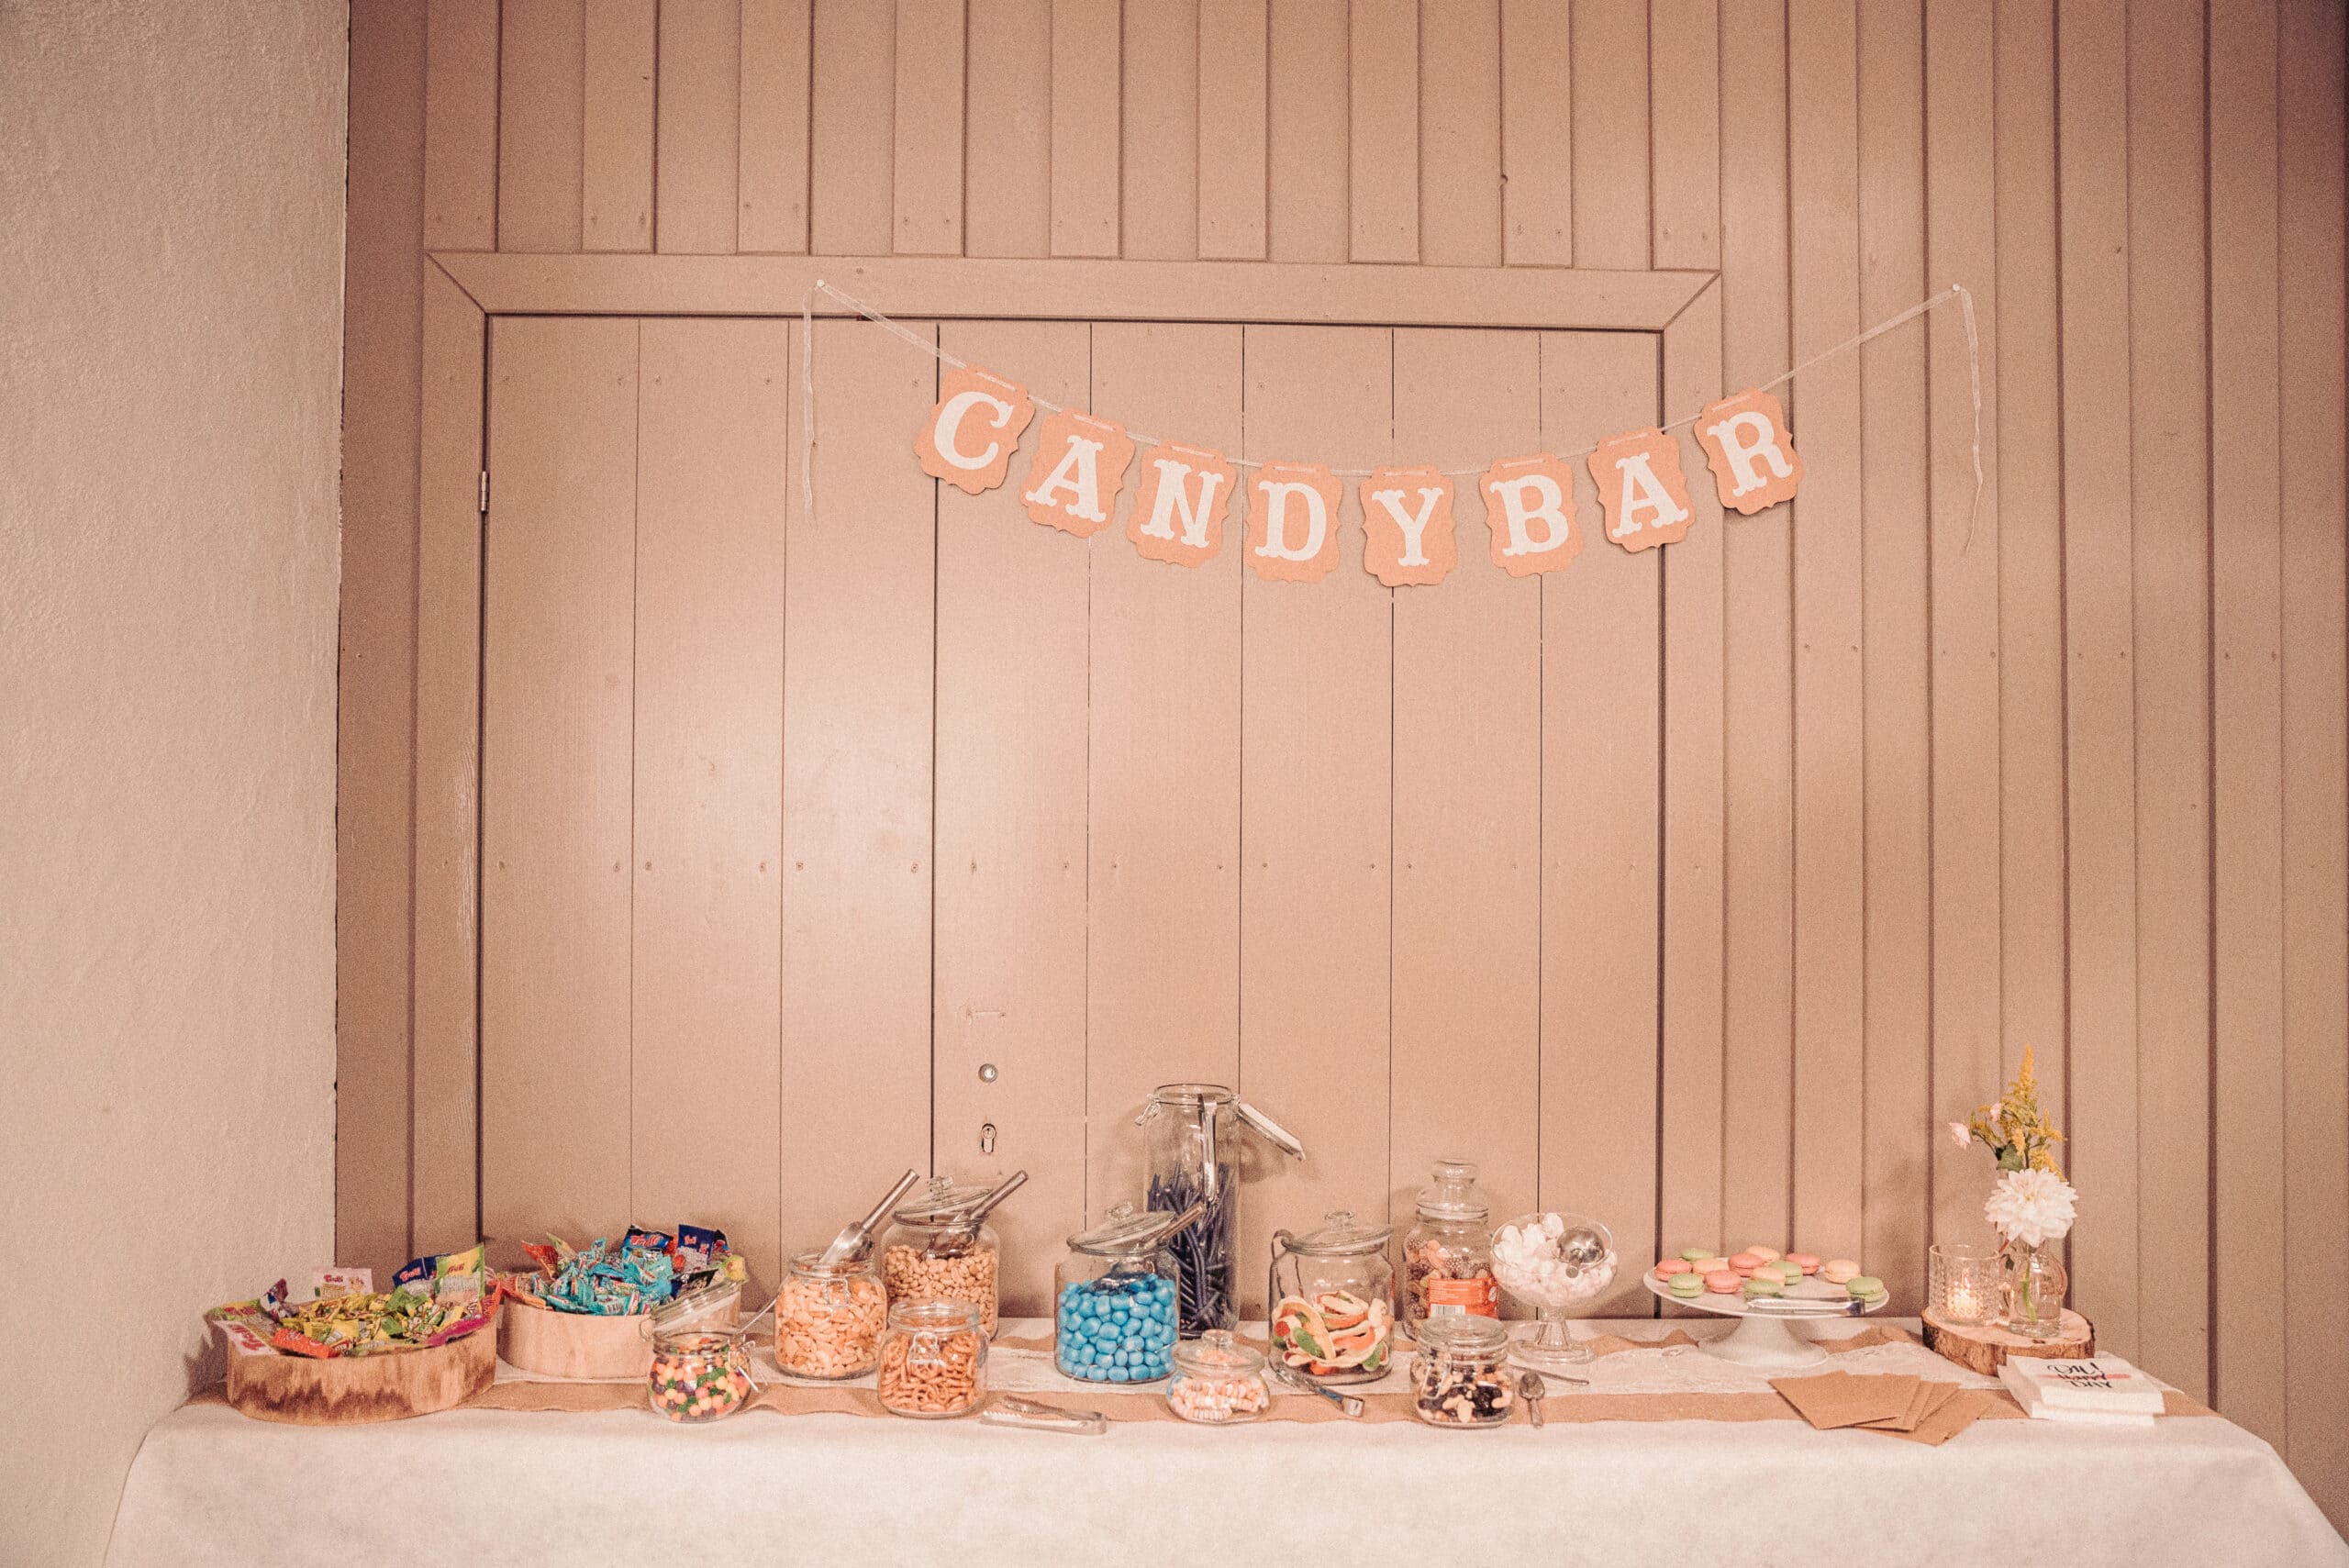 Die Candybar auf der Hochzeitsfeier.